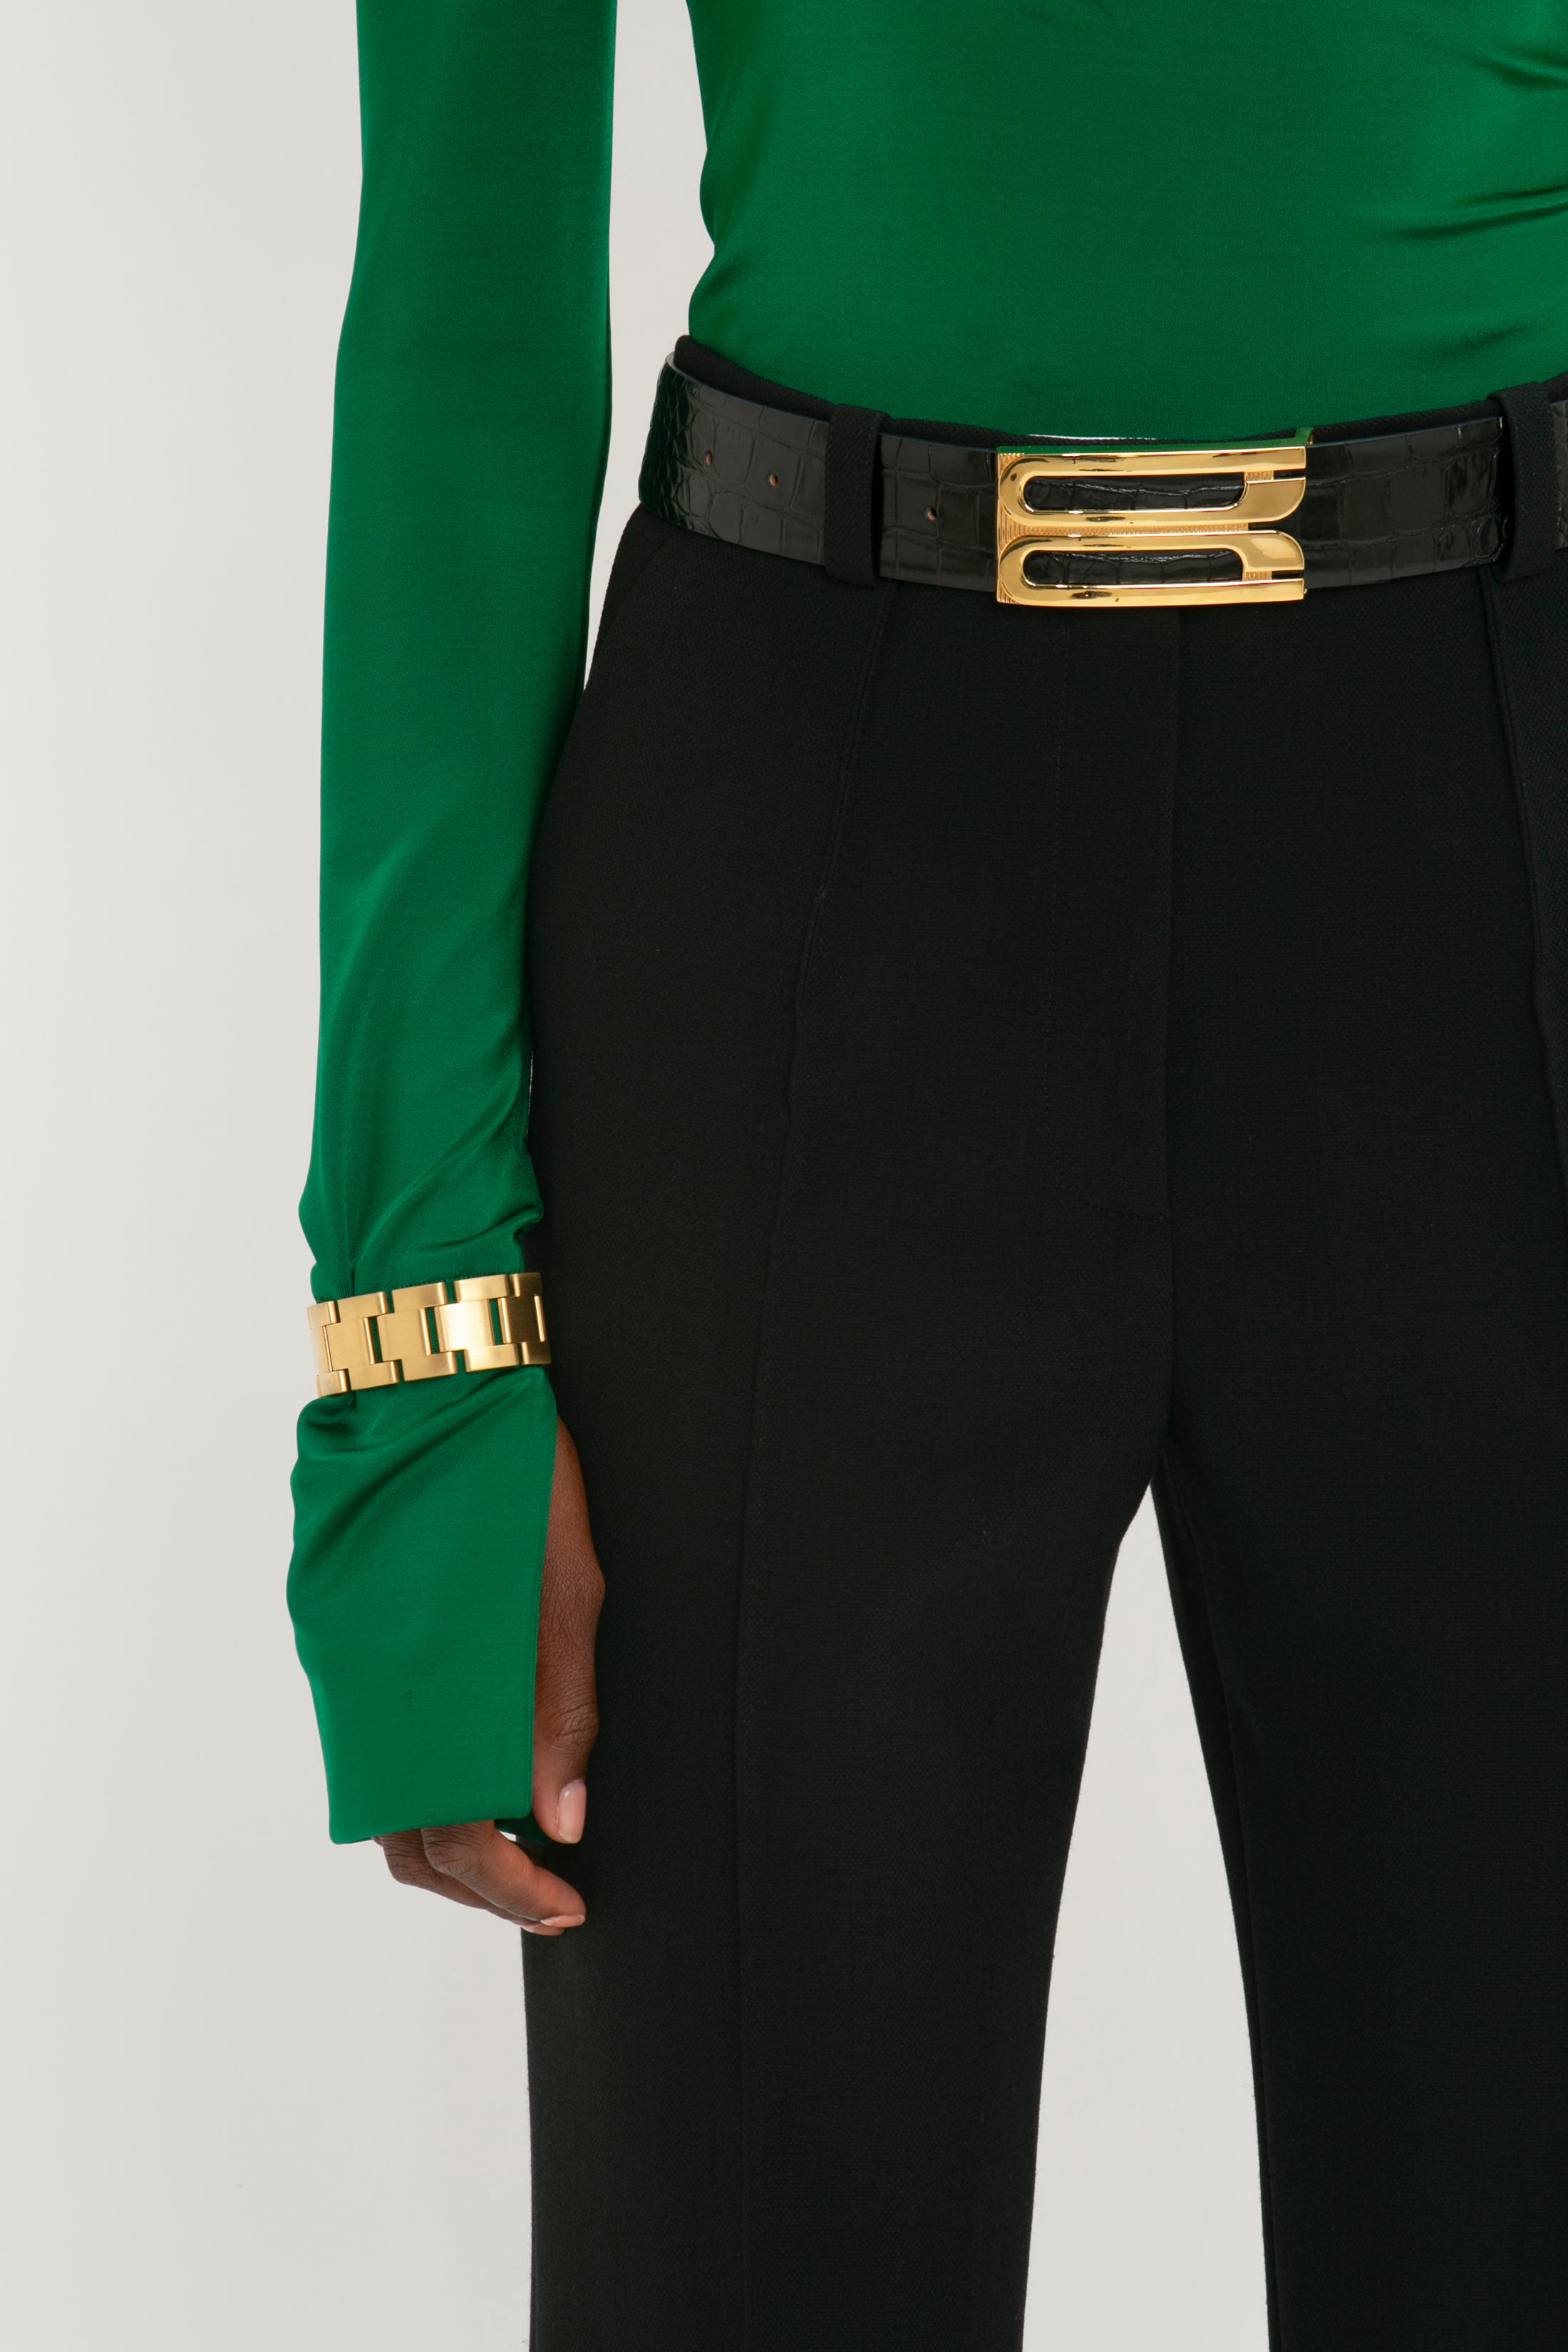 Frame Buckle Belt in Black Leather – Victoria Beckham